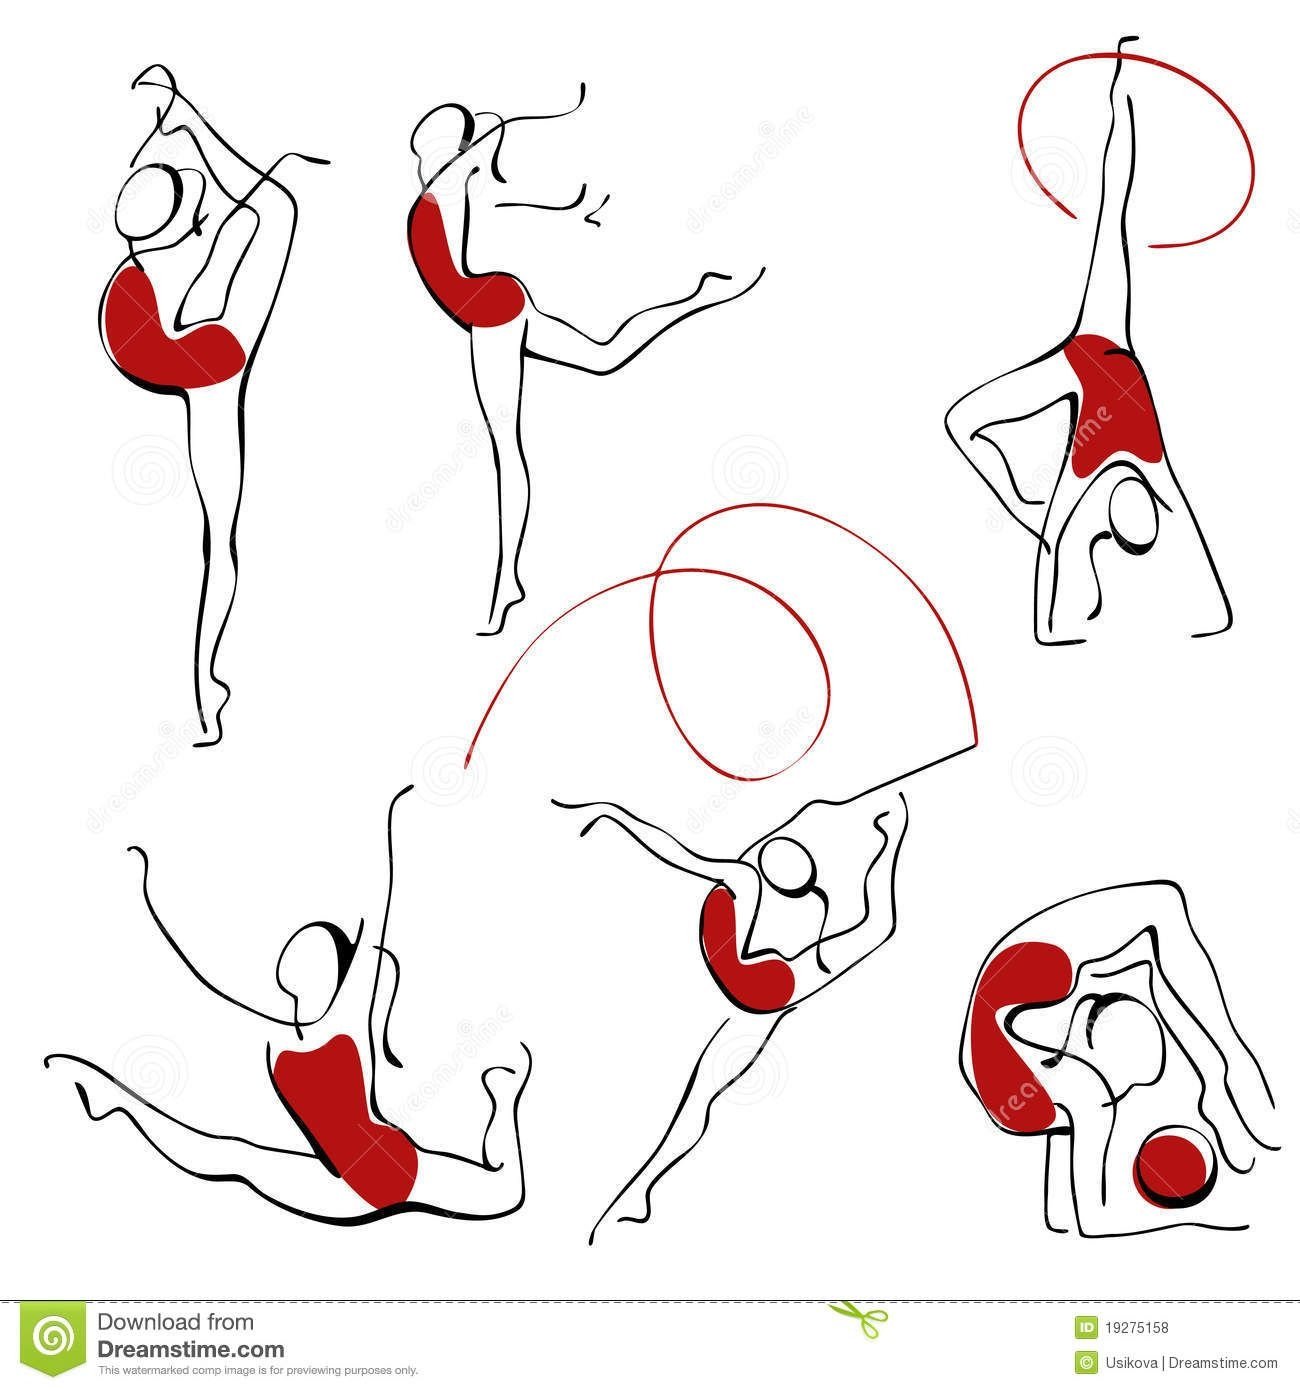 Рисунки для упражнений начинающих гимнасток